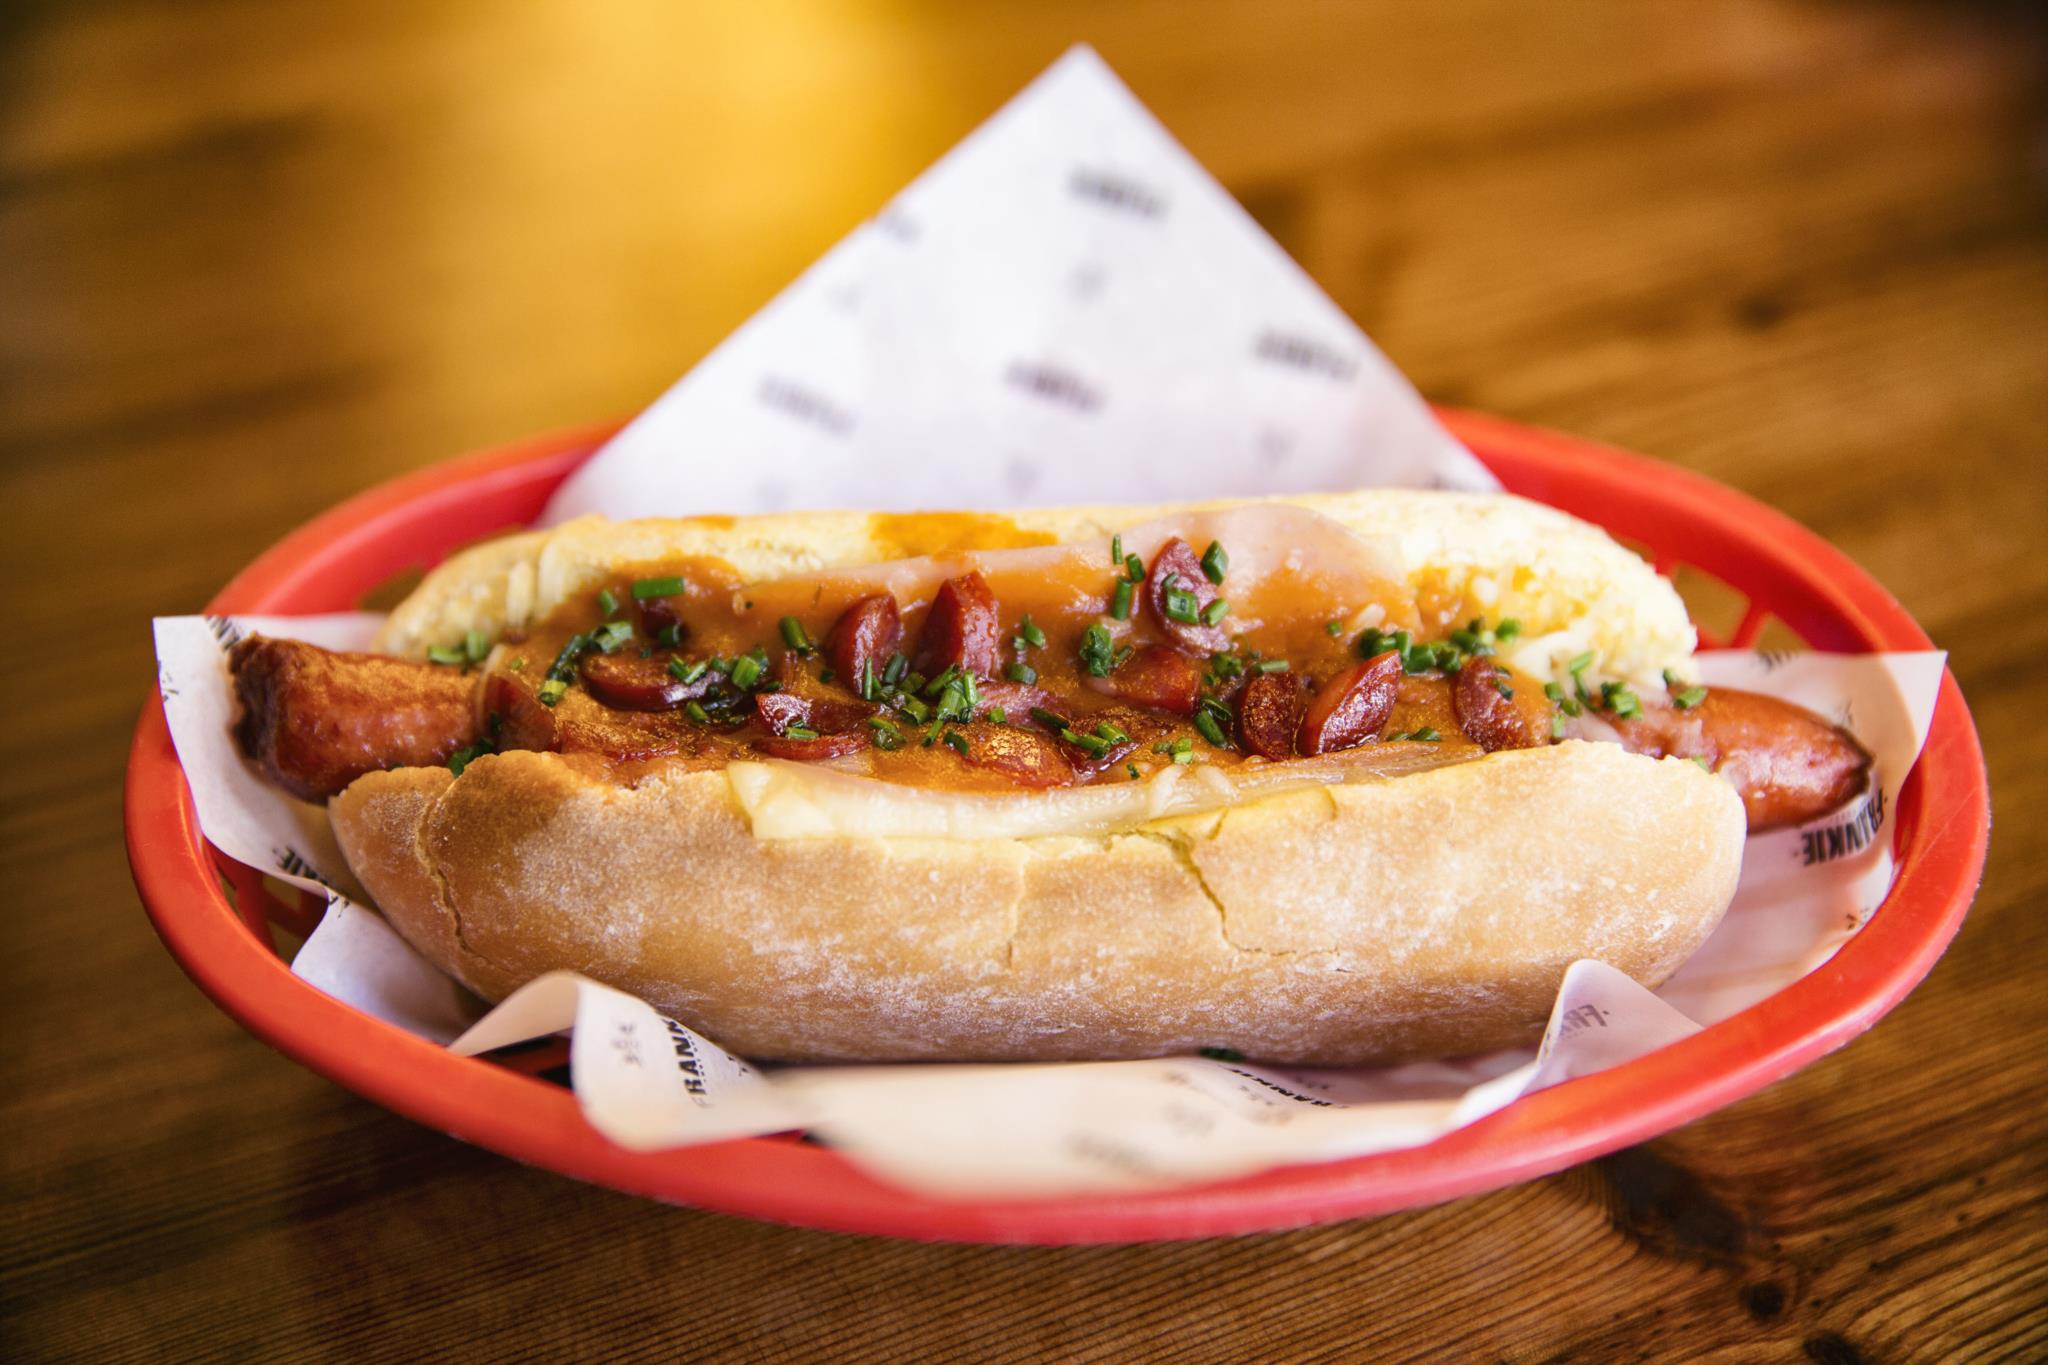 Frankie - Hot Dogs - Muito mais que um hot dog